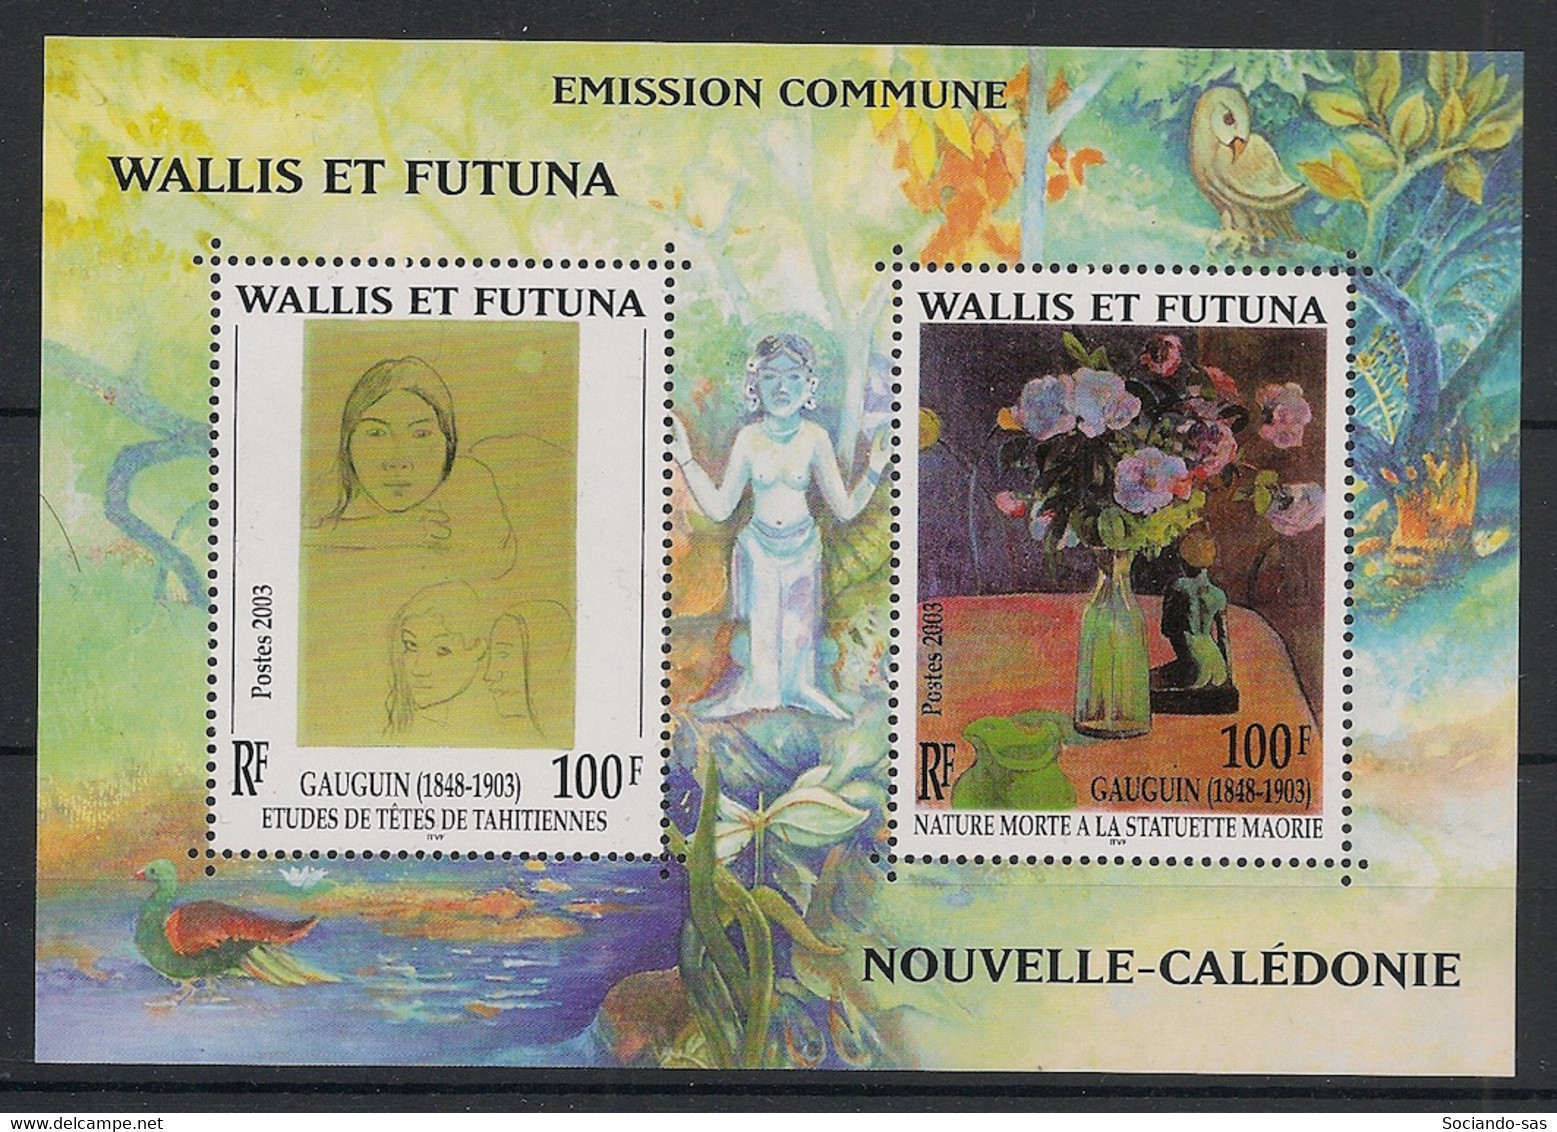 WALLIS ET FUTUNA - 2003 - Bloc Feuillet BF N°YT. 13 - Gauguin - Neuf Luxe ** / MNH / Postfrisch - Blocks & Sheetlets